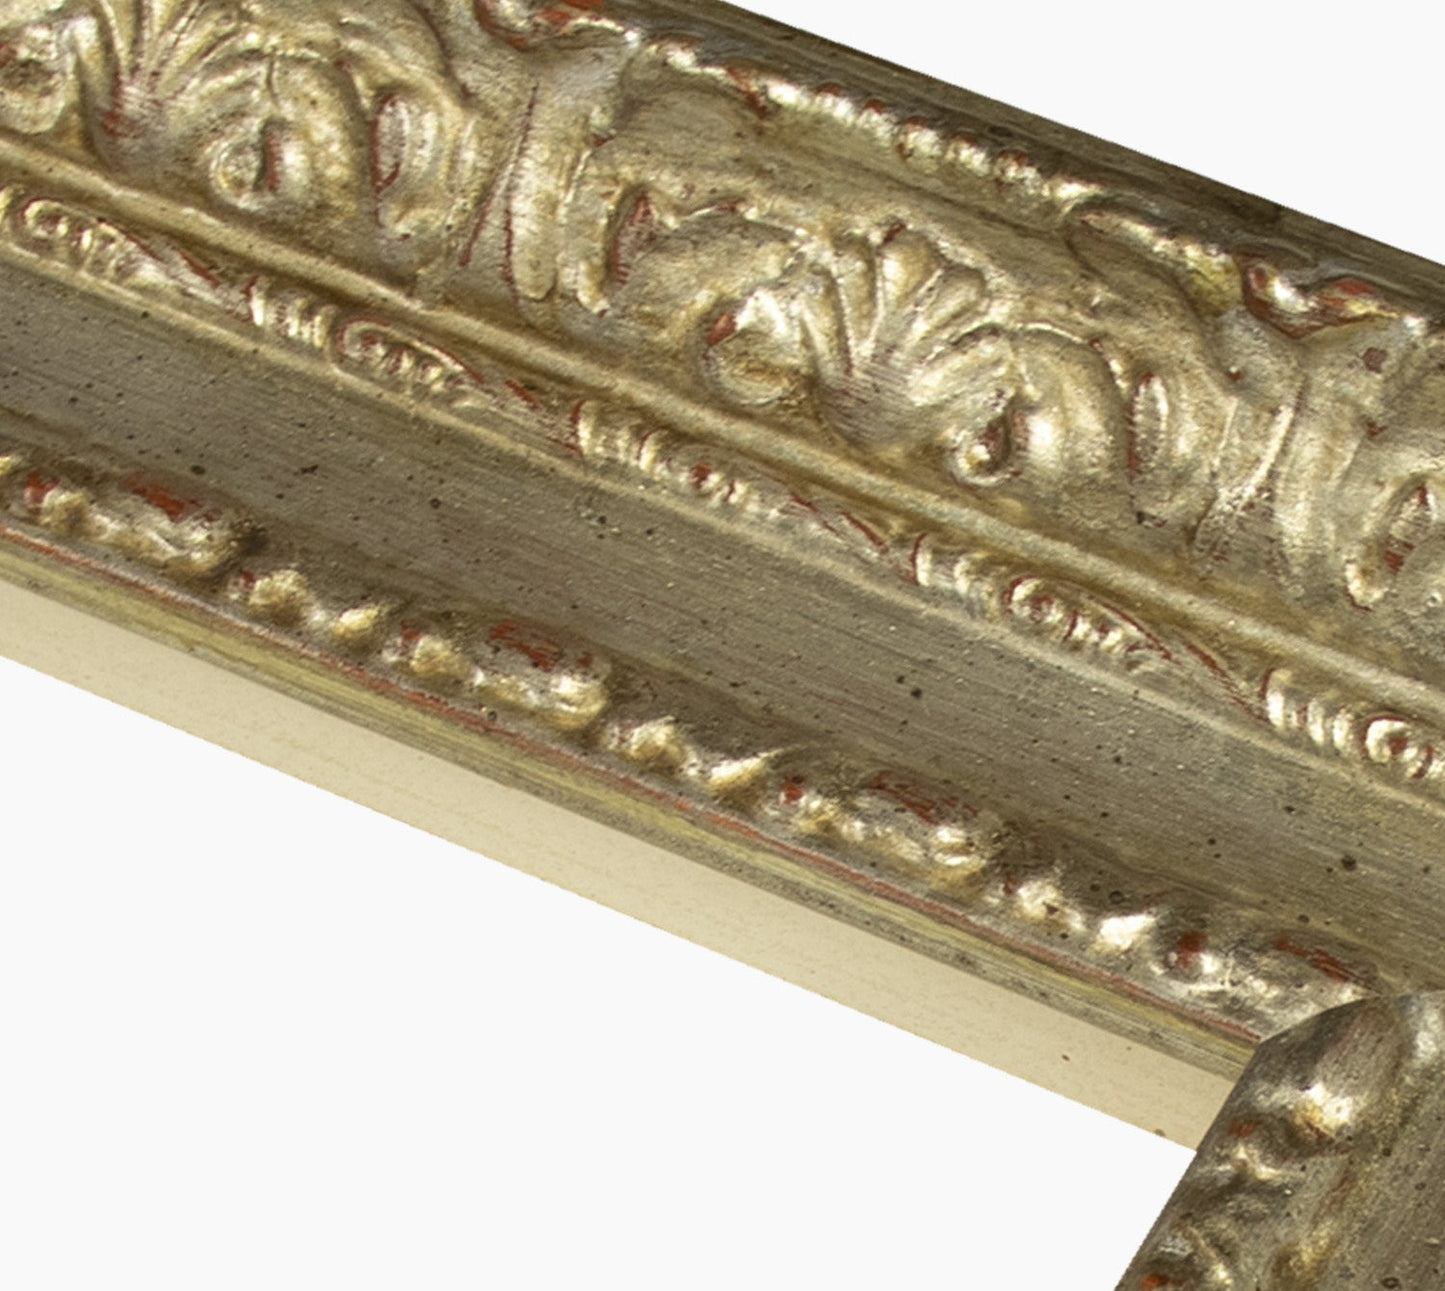 643.011 cadre en bois à la feuille d'argent mesure de profil 65x55 mm Lombarda cornici S.n.c.